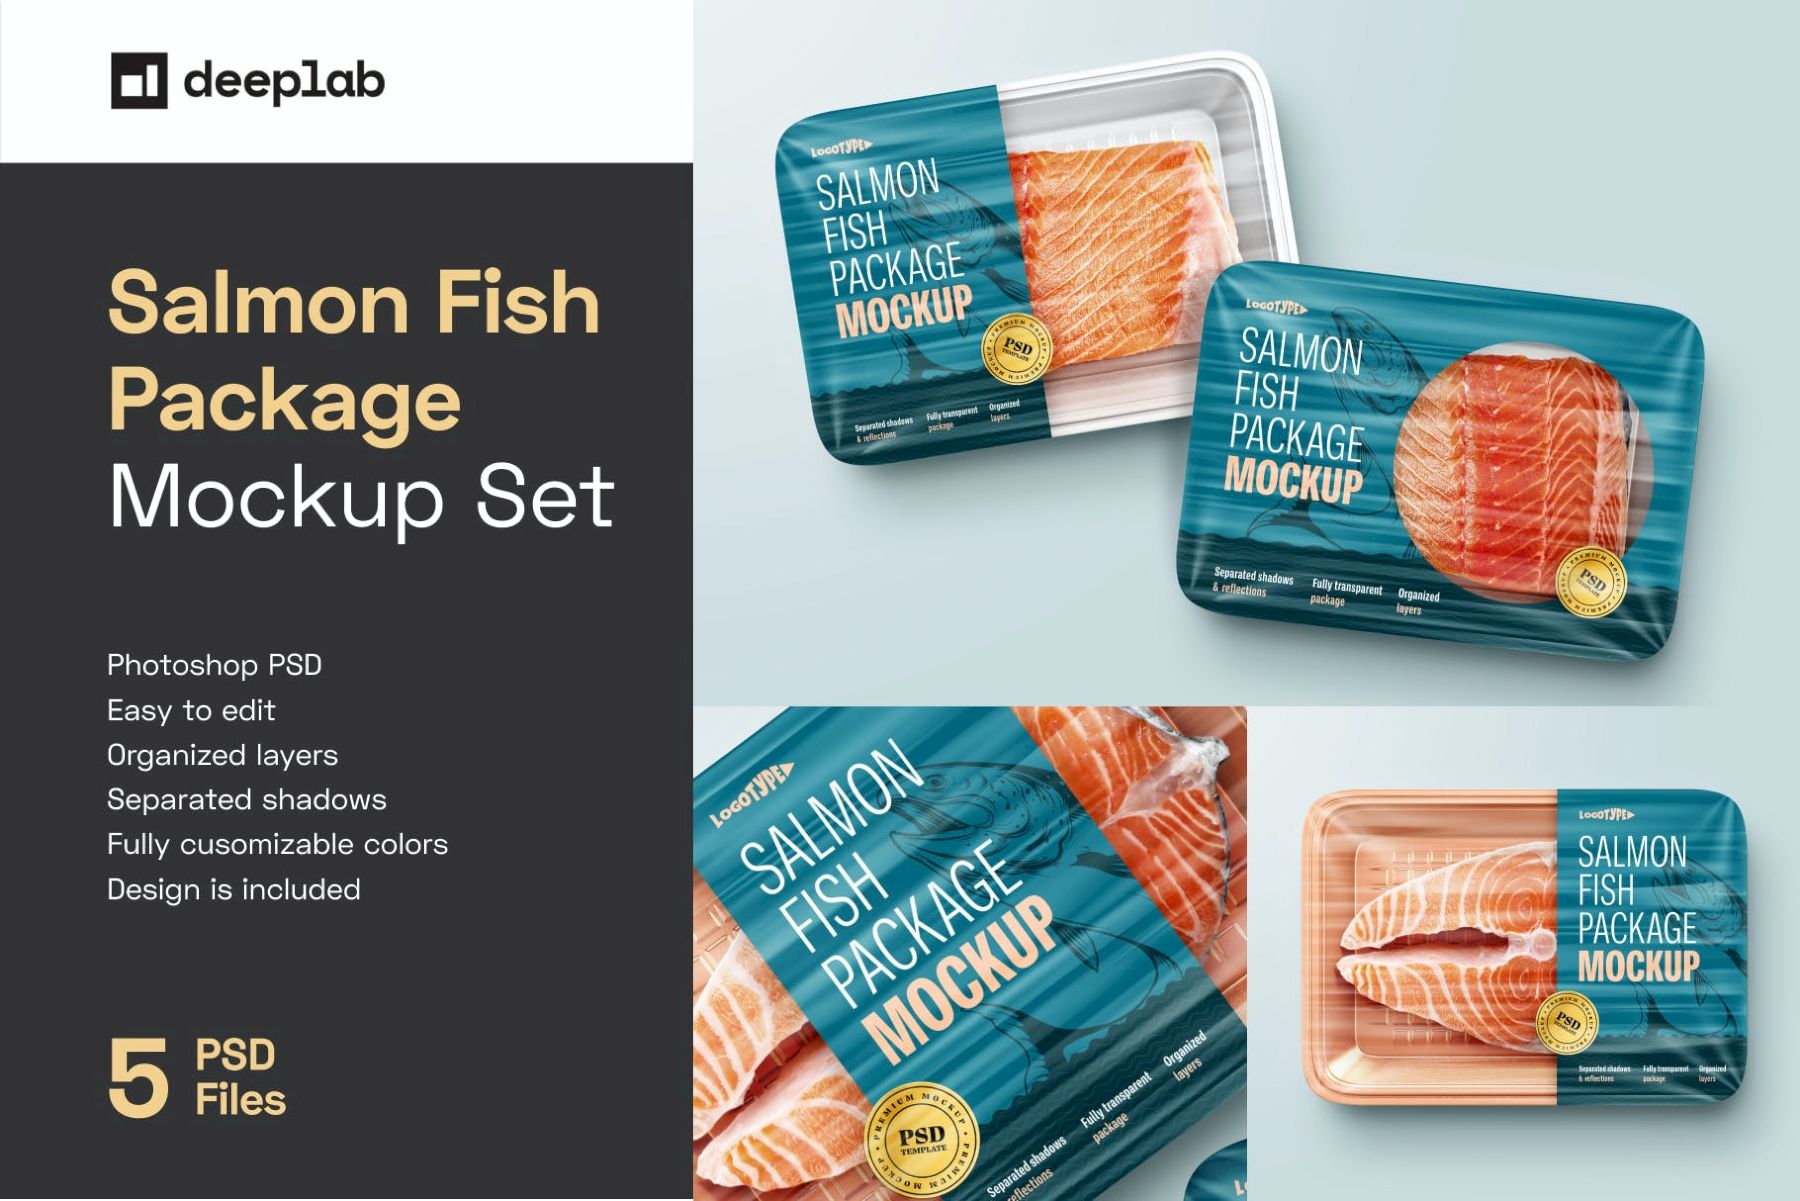 三文鱼包装样机套装 Salmon Fish Package Mockup Set插图